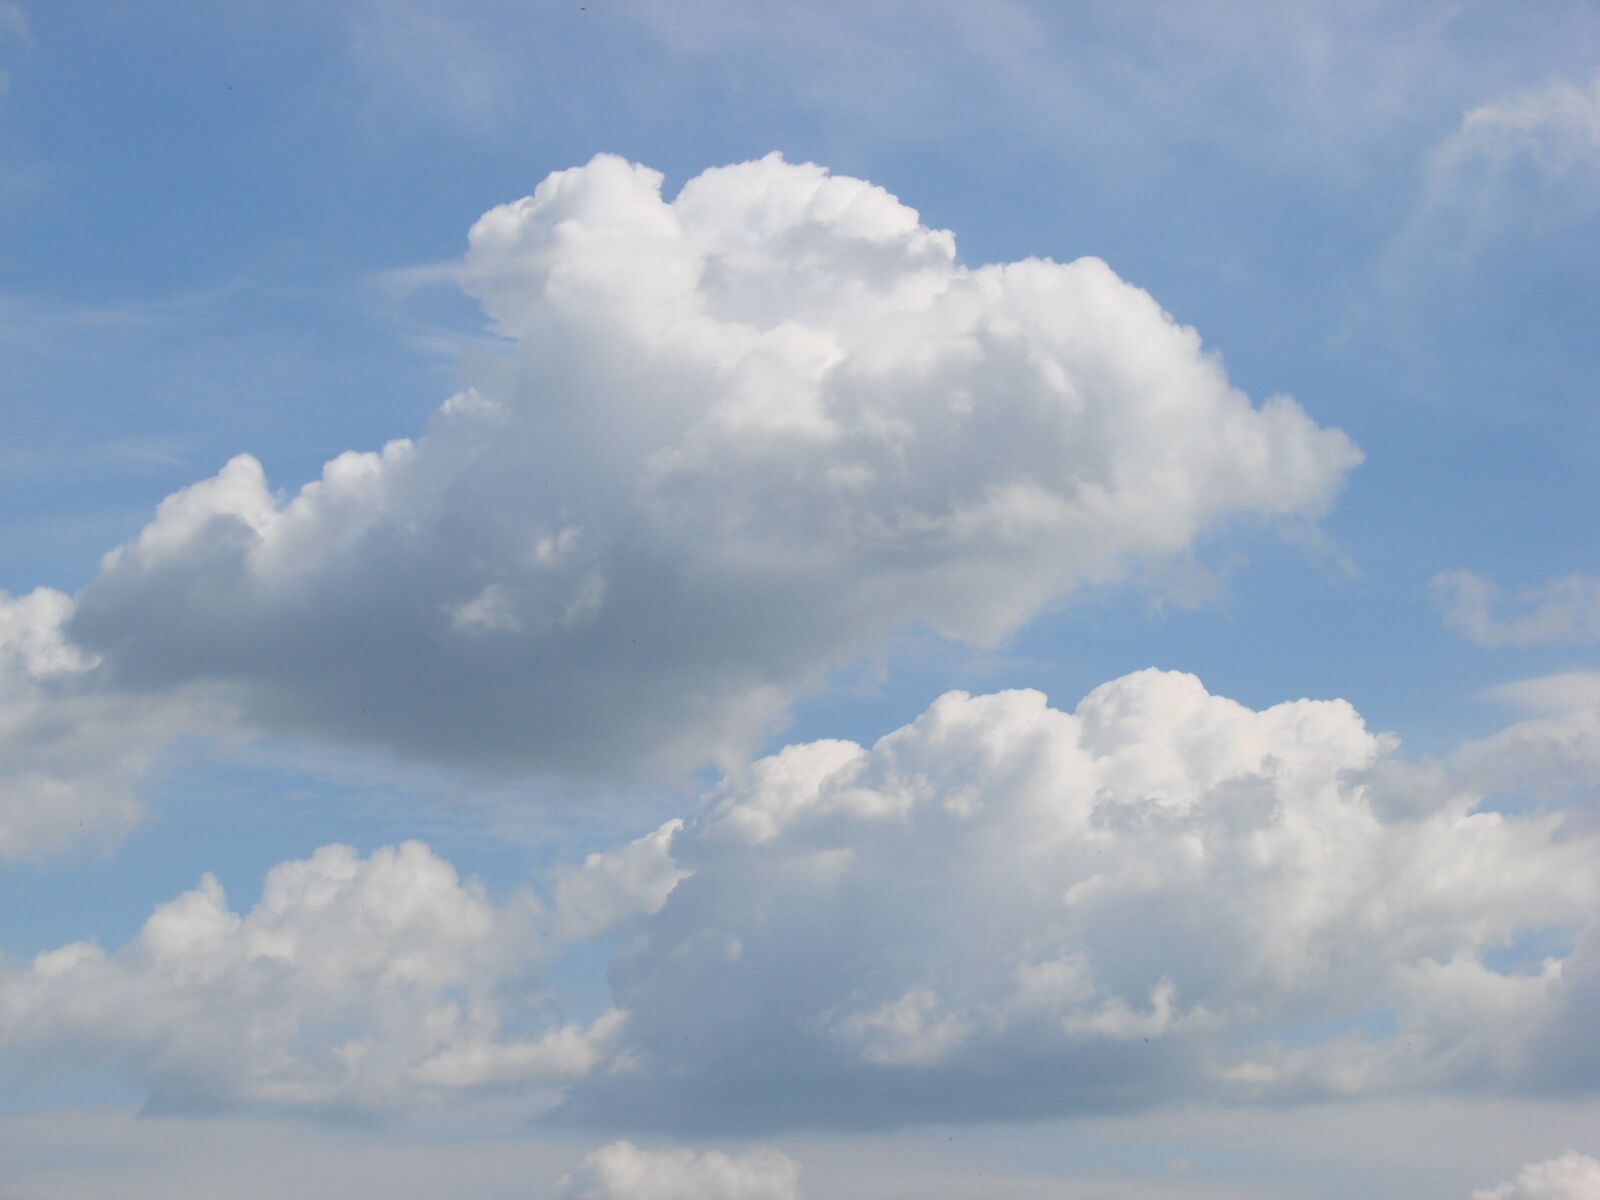 Sony DSC-H5 sample photo. Clouds, sky, landscape photography